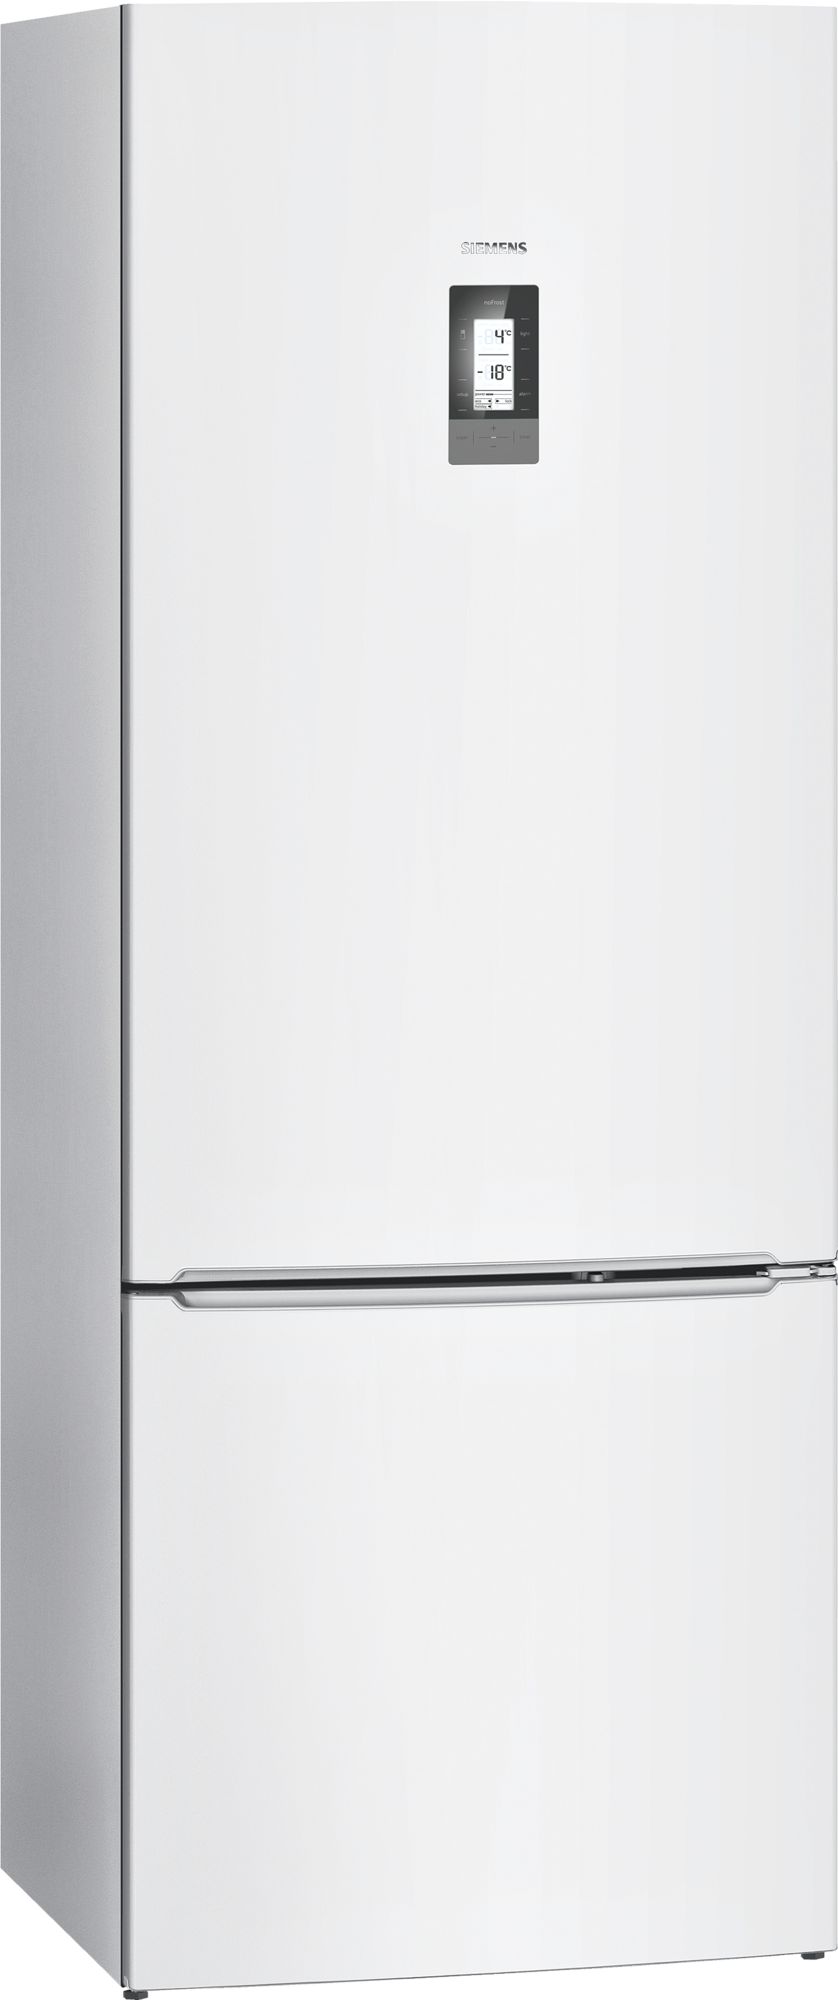 iQ700 Alttan Donduruculu Buzdolabı Beyaz, 70 cm